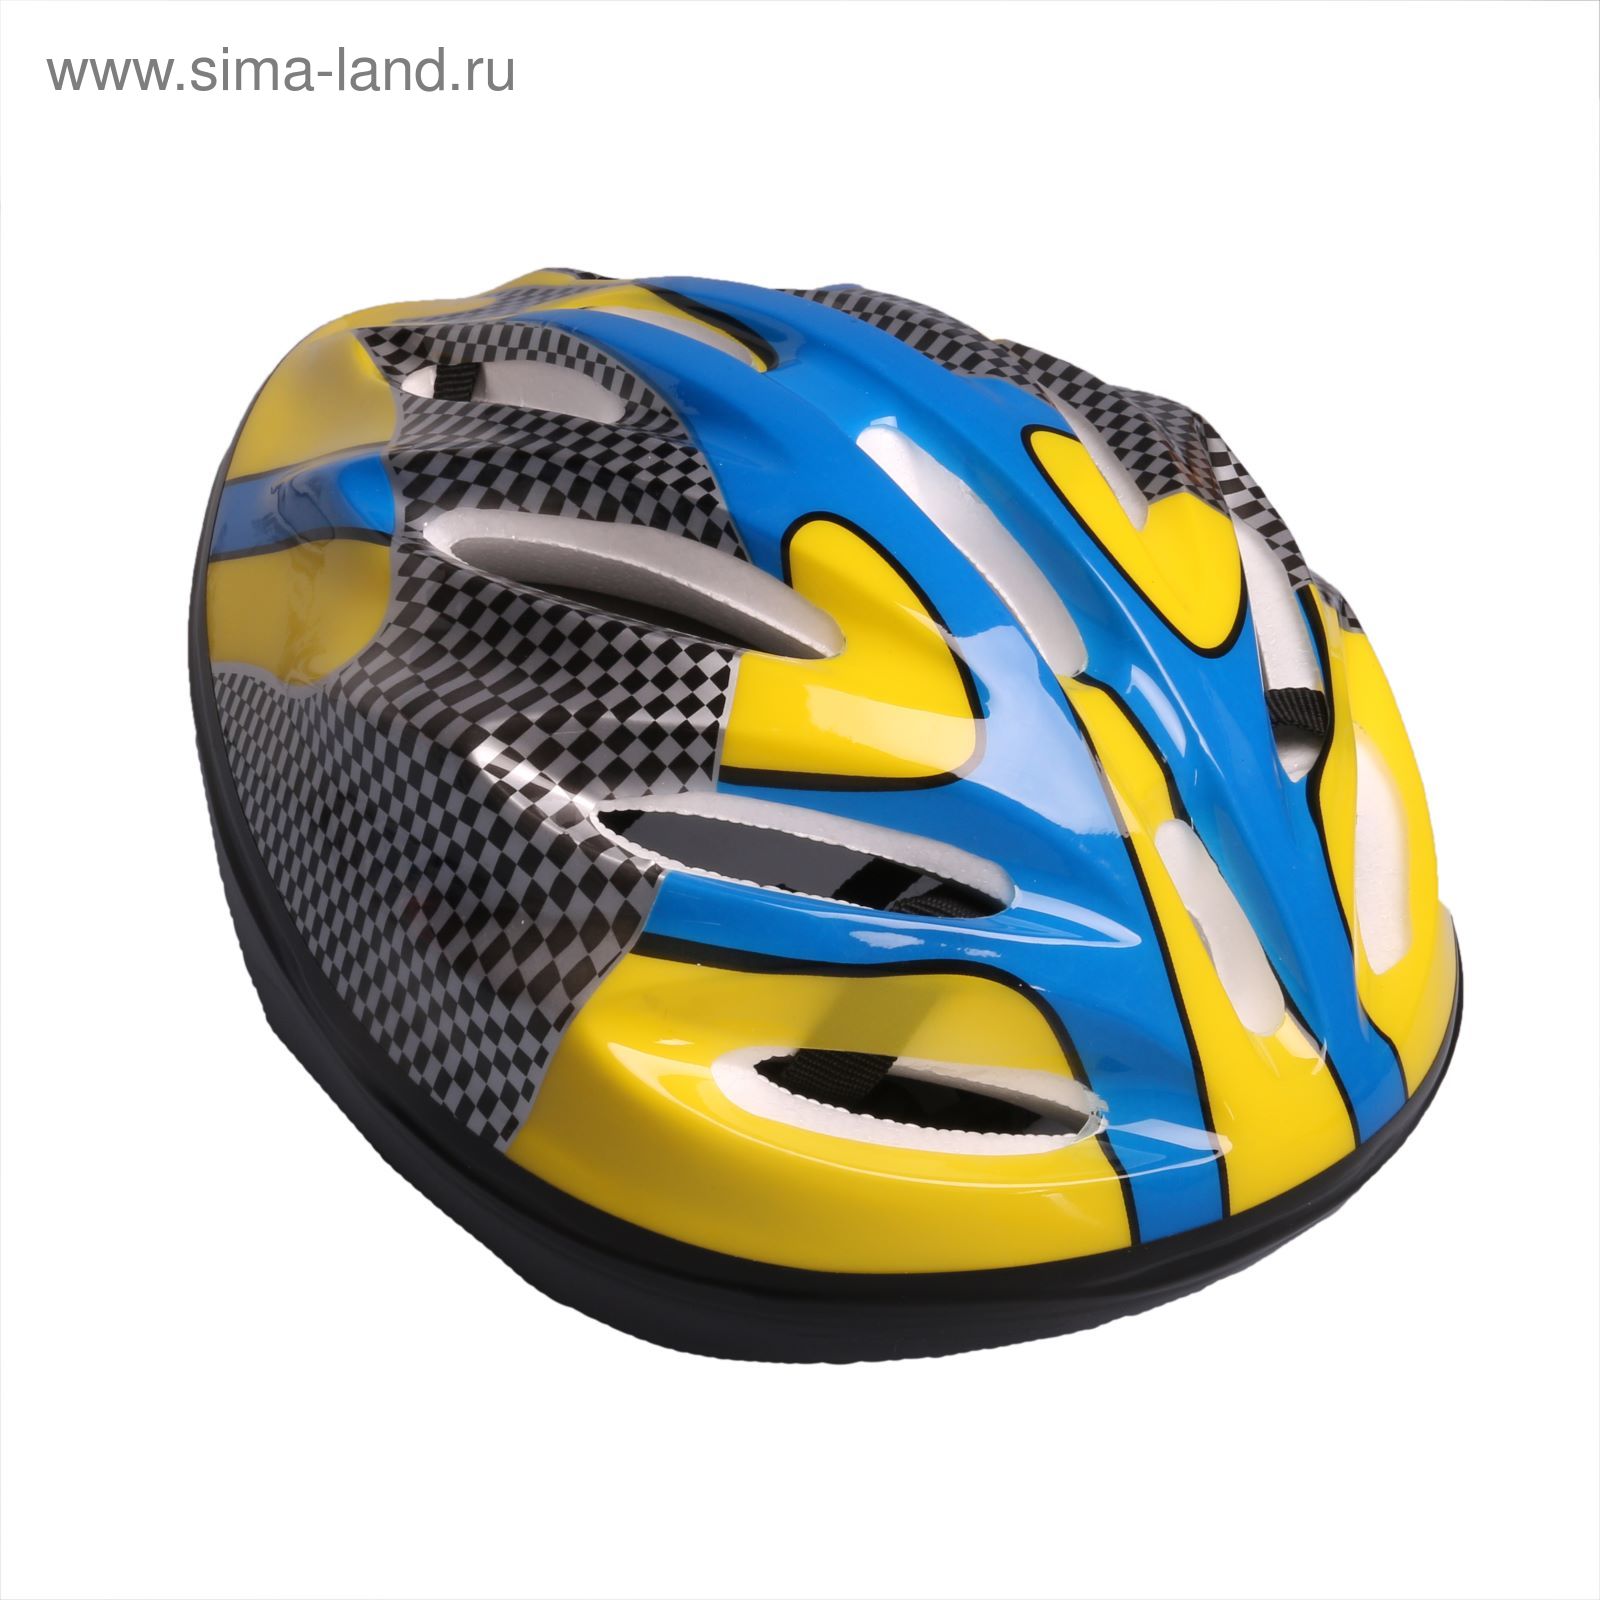 Шлем велосипедиста взрослый ОТ-11, размер L (56-58 см), цвет: желто-синий